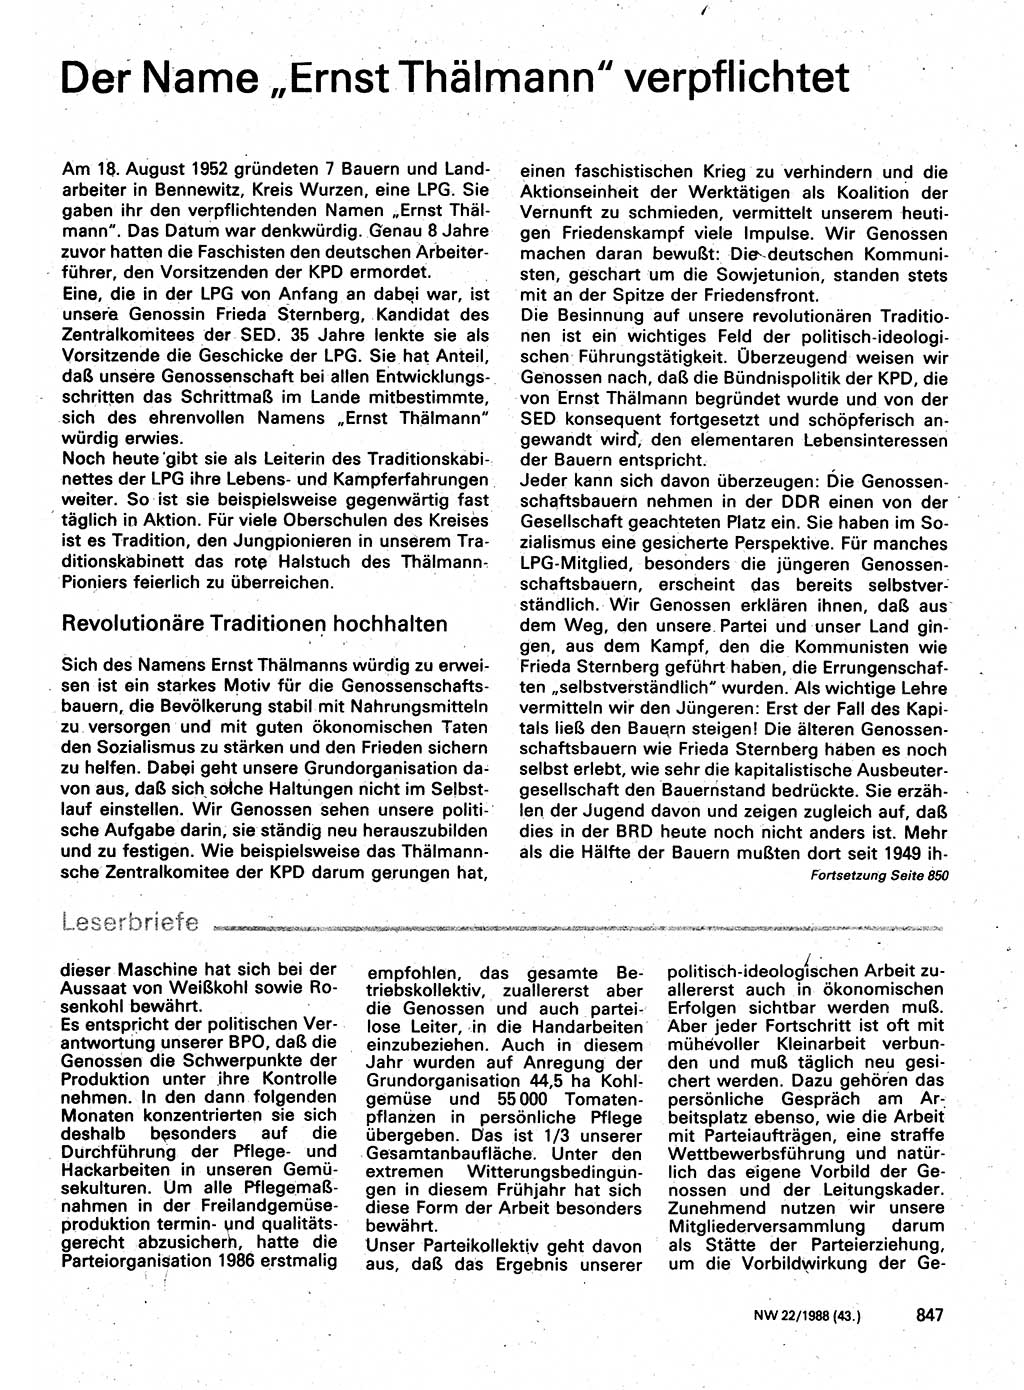 Neuer Weg (NW), Organ des Zentralkomitees (ZK) der SED (Sozialistische Einheitspartei Deutschlands) für Fragen des Parteilebens, 43. Jahrgang [Deutsche Demokratische Republik (DDR)] 1988, Seite 847 (NW ZK SED DDR 1988, S. 847)